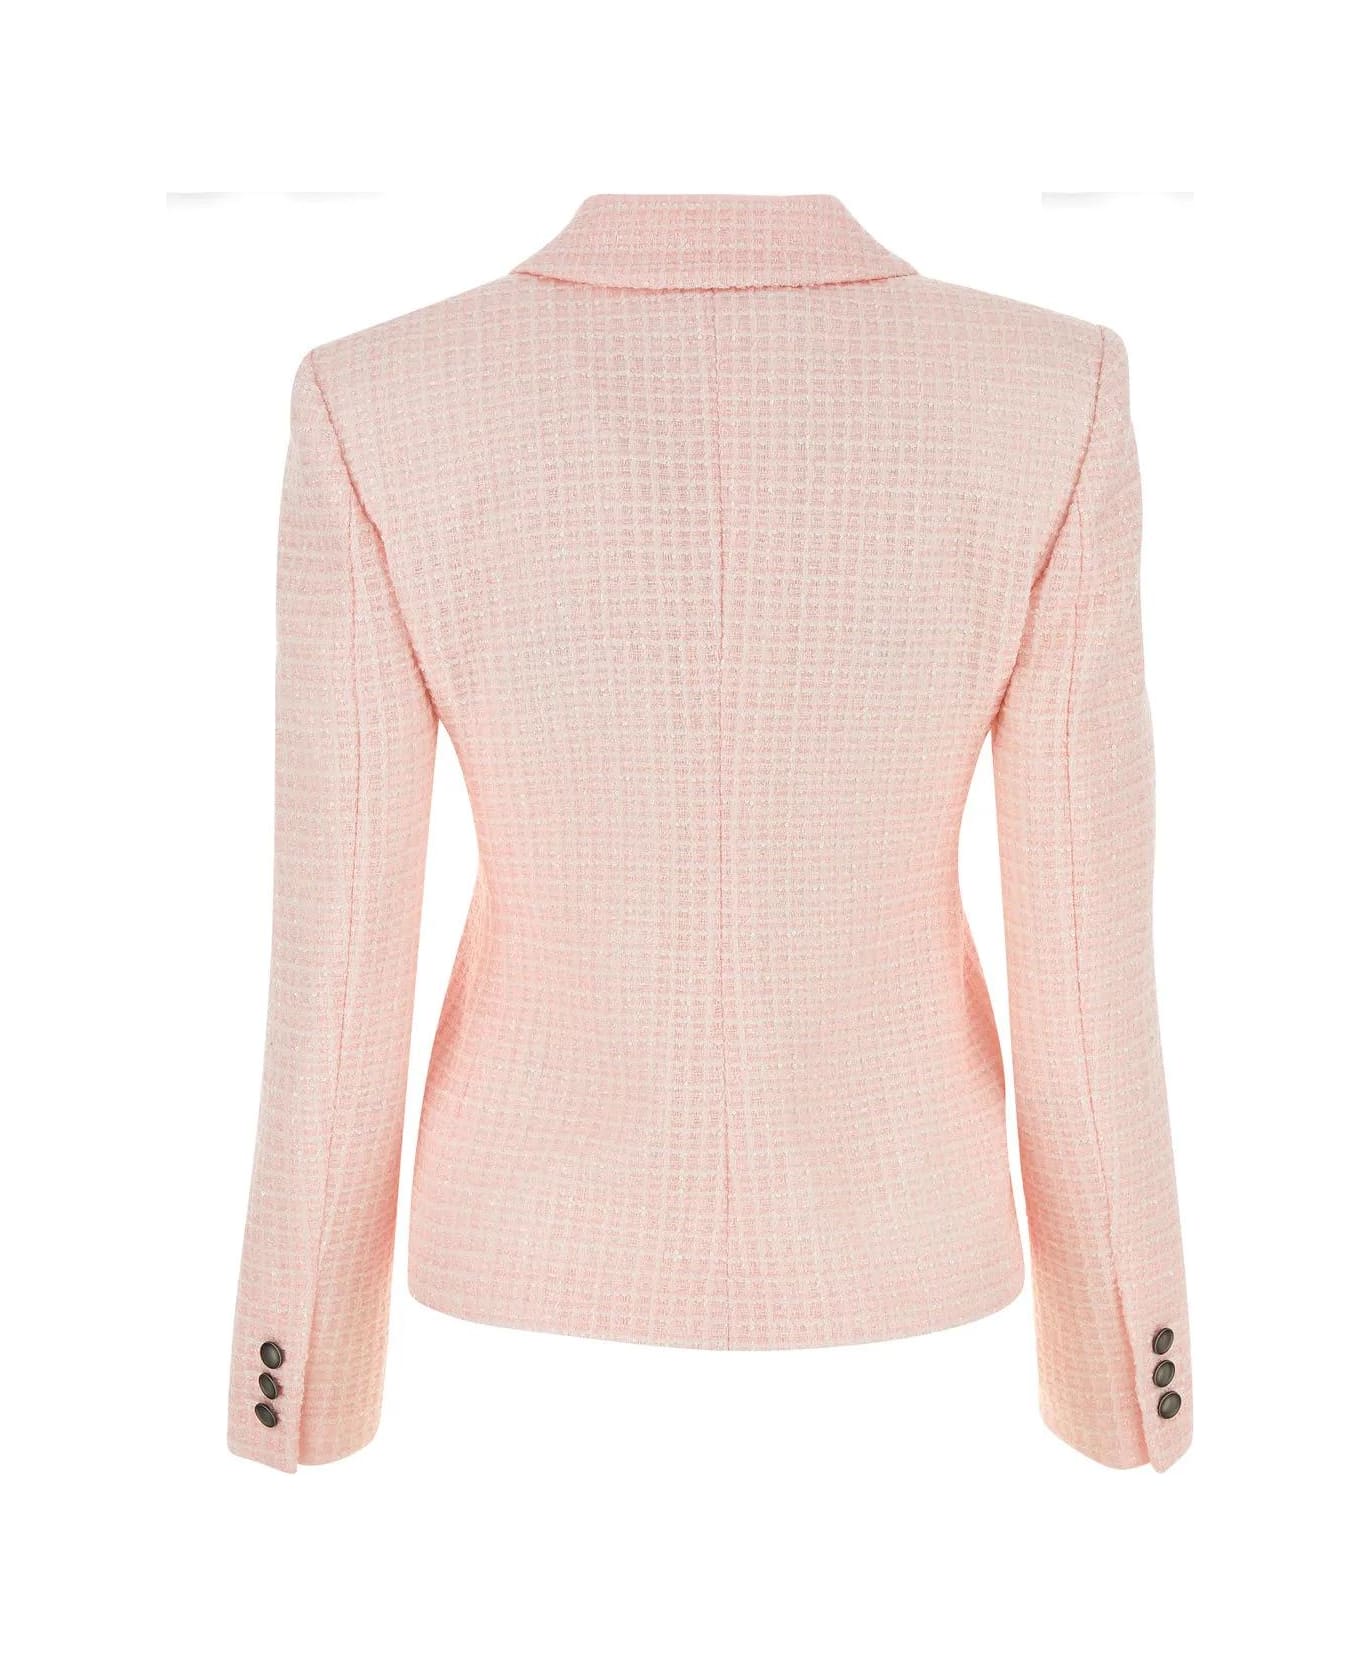 Alessandra Rich Light Pink Tweed Blazer - Powder